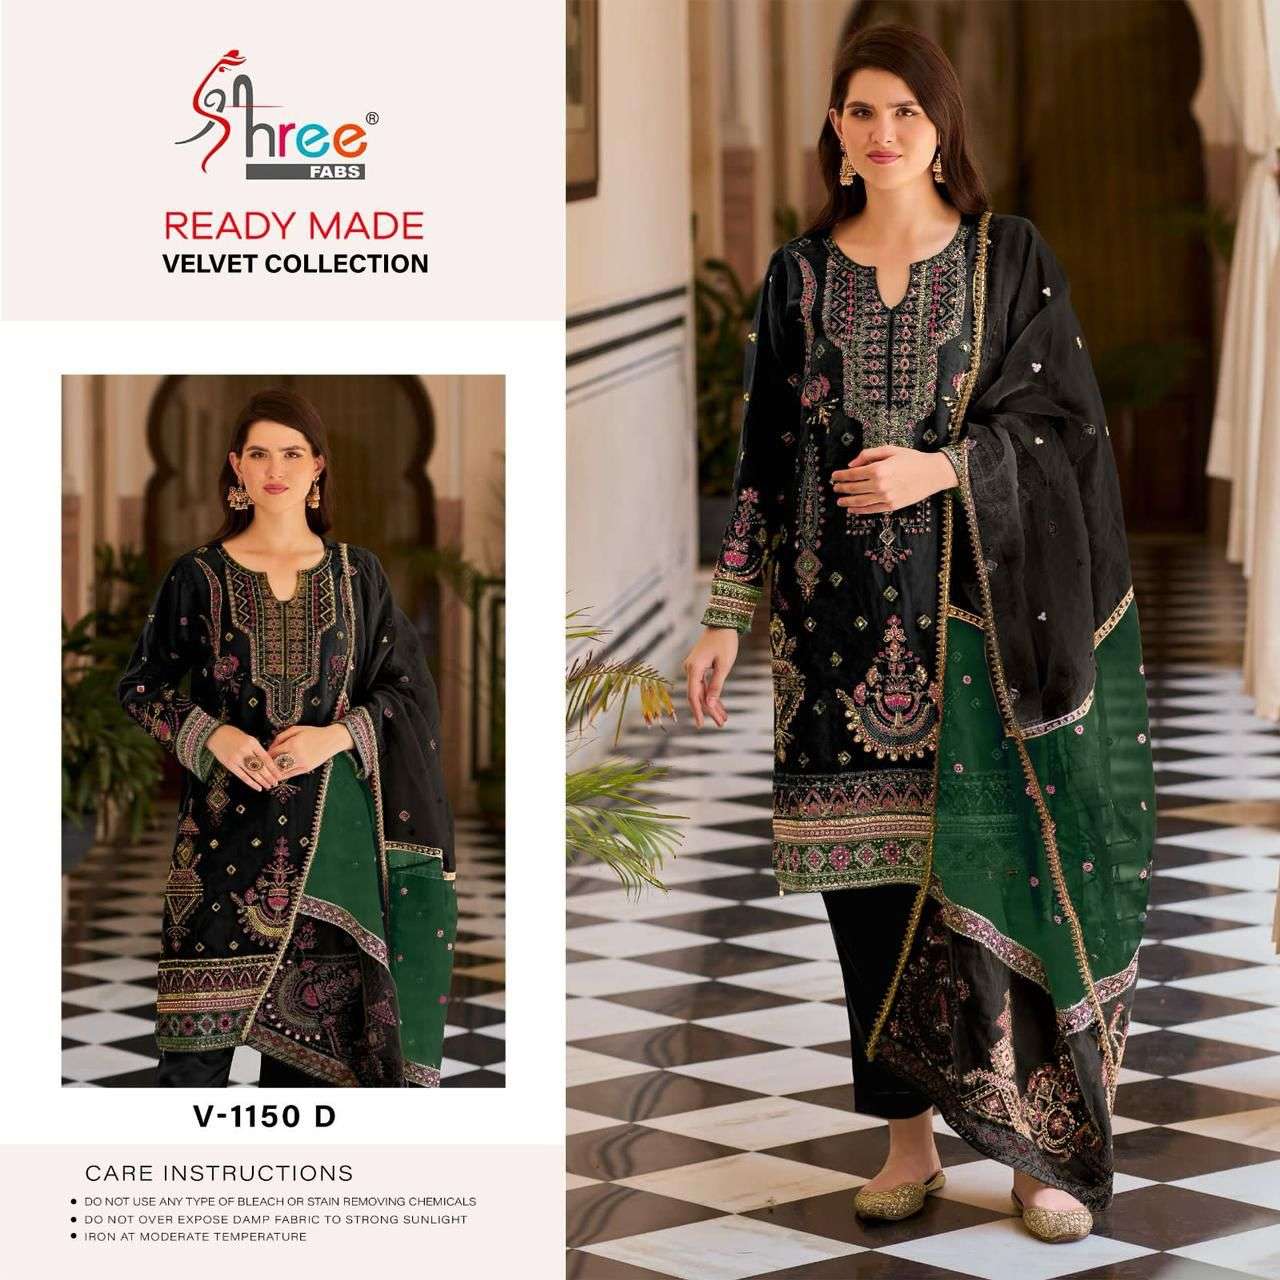 Shree Fabs V 1150 Colors Pakistani Festive Wear Style Winter Wear Suit Wholesalers